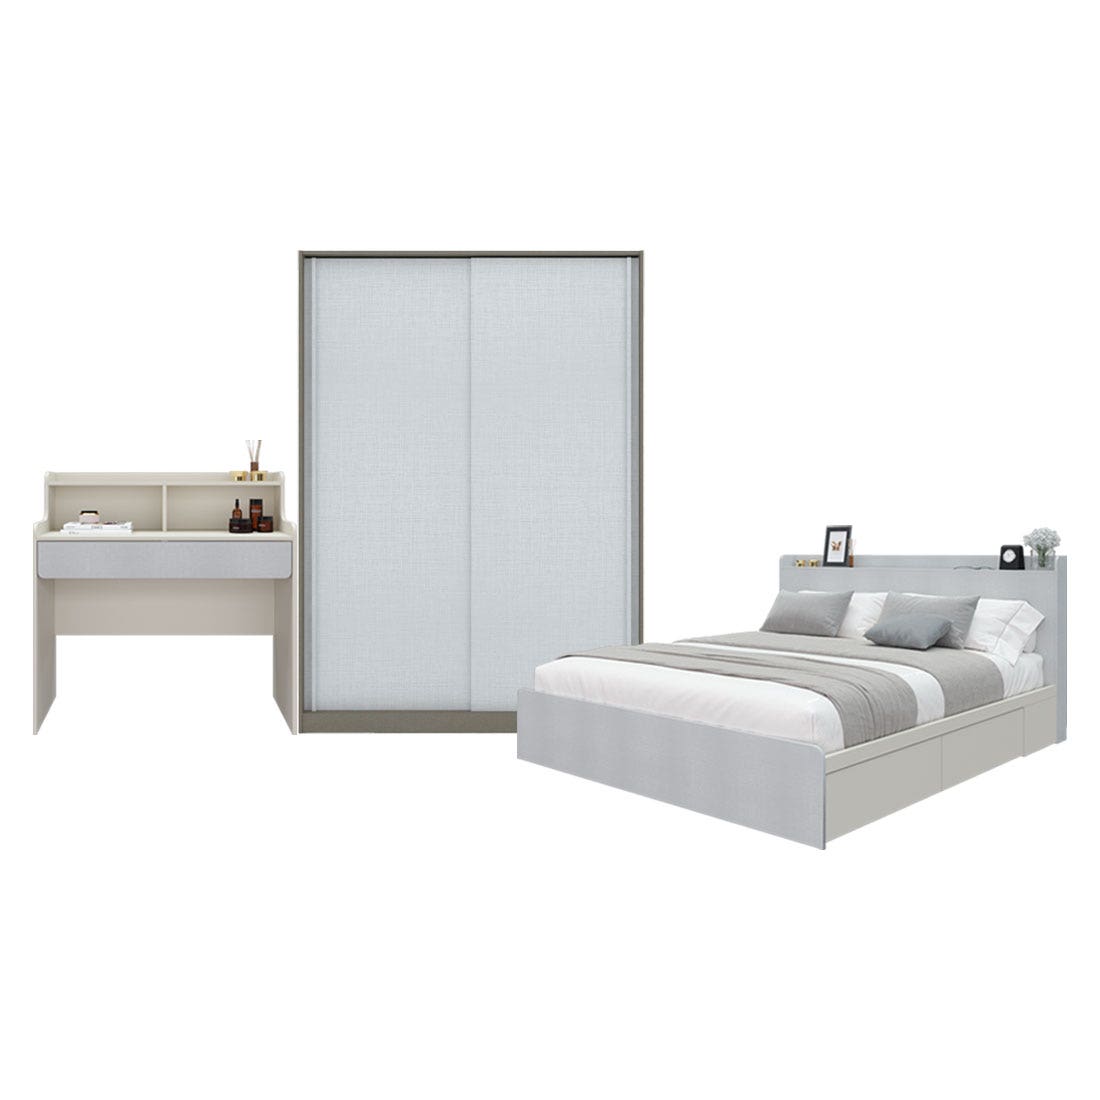 ชุดห้องนอน 6 ฟุต & ตู้ Blox บานเลื่อน 150 ซม. & โต๊ะเครื่องแป้ง รุ่น Aiko สีขาว01